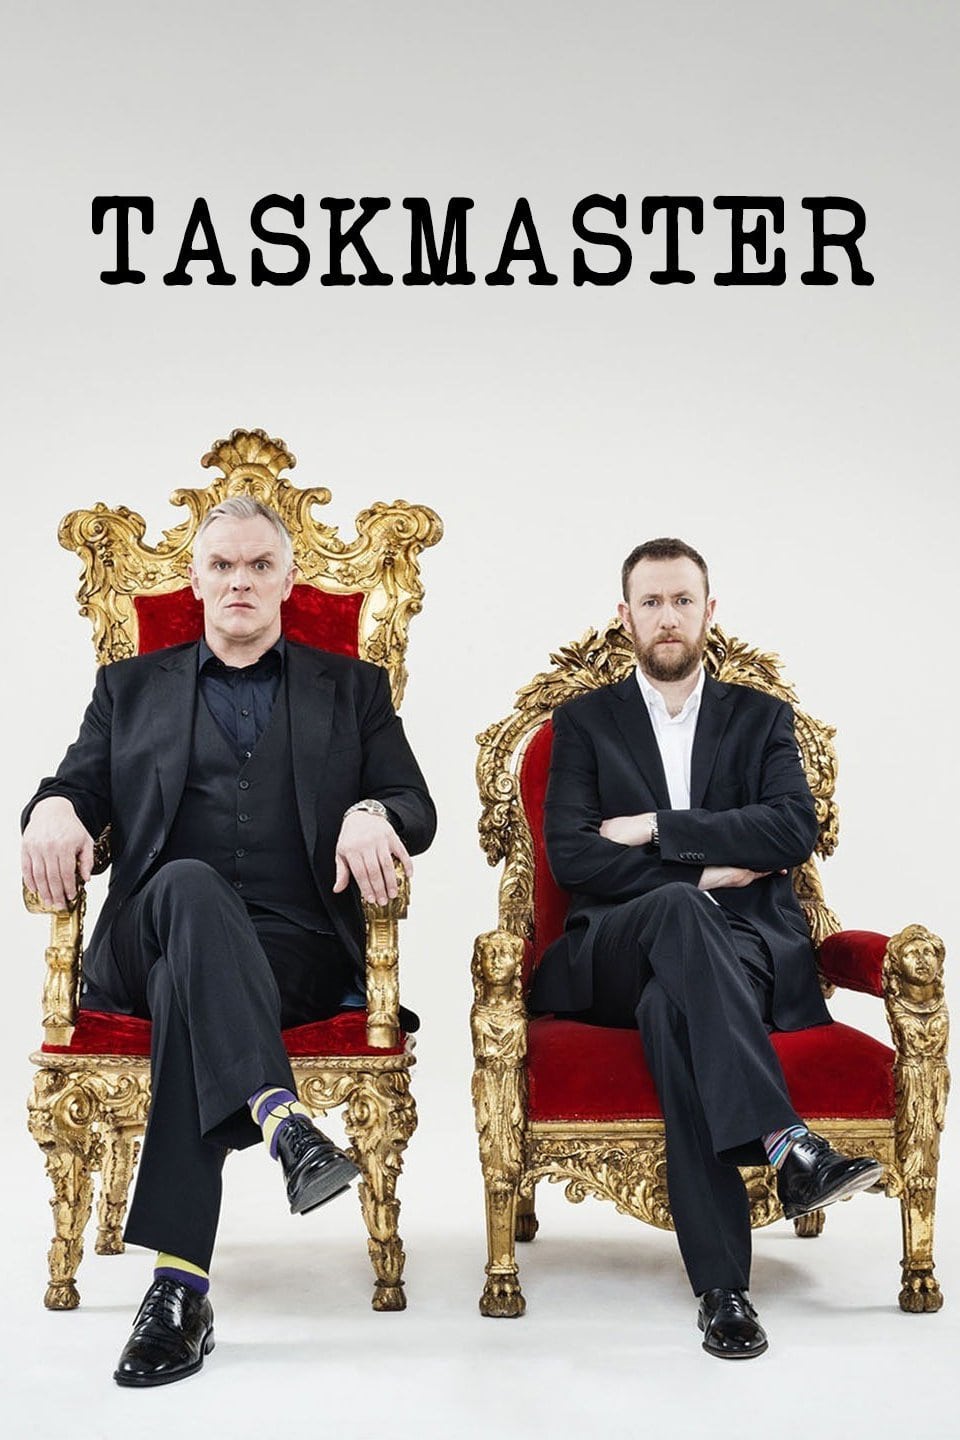 Taskmaster series